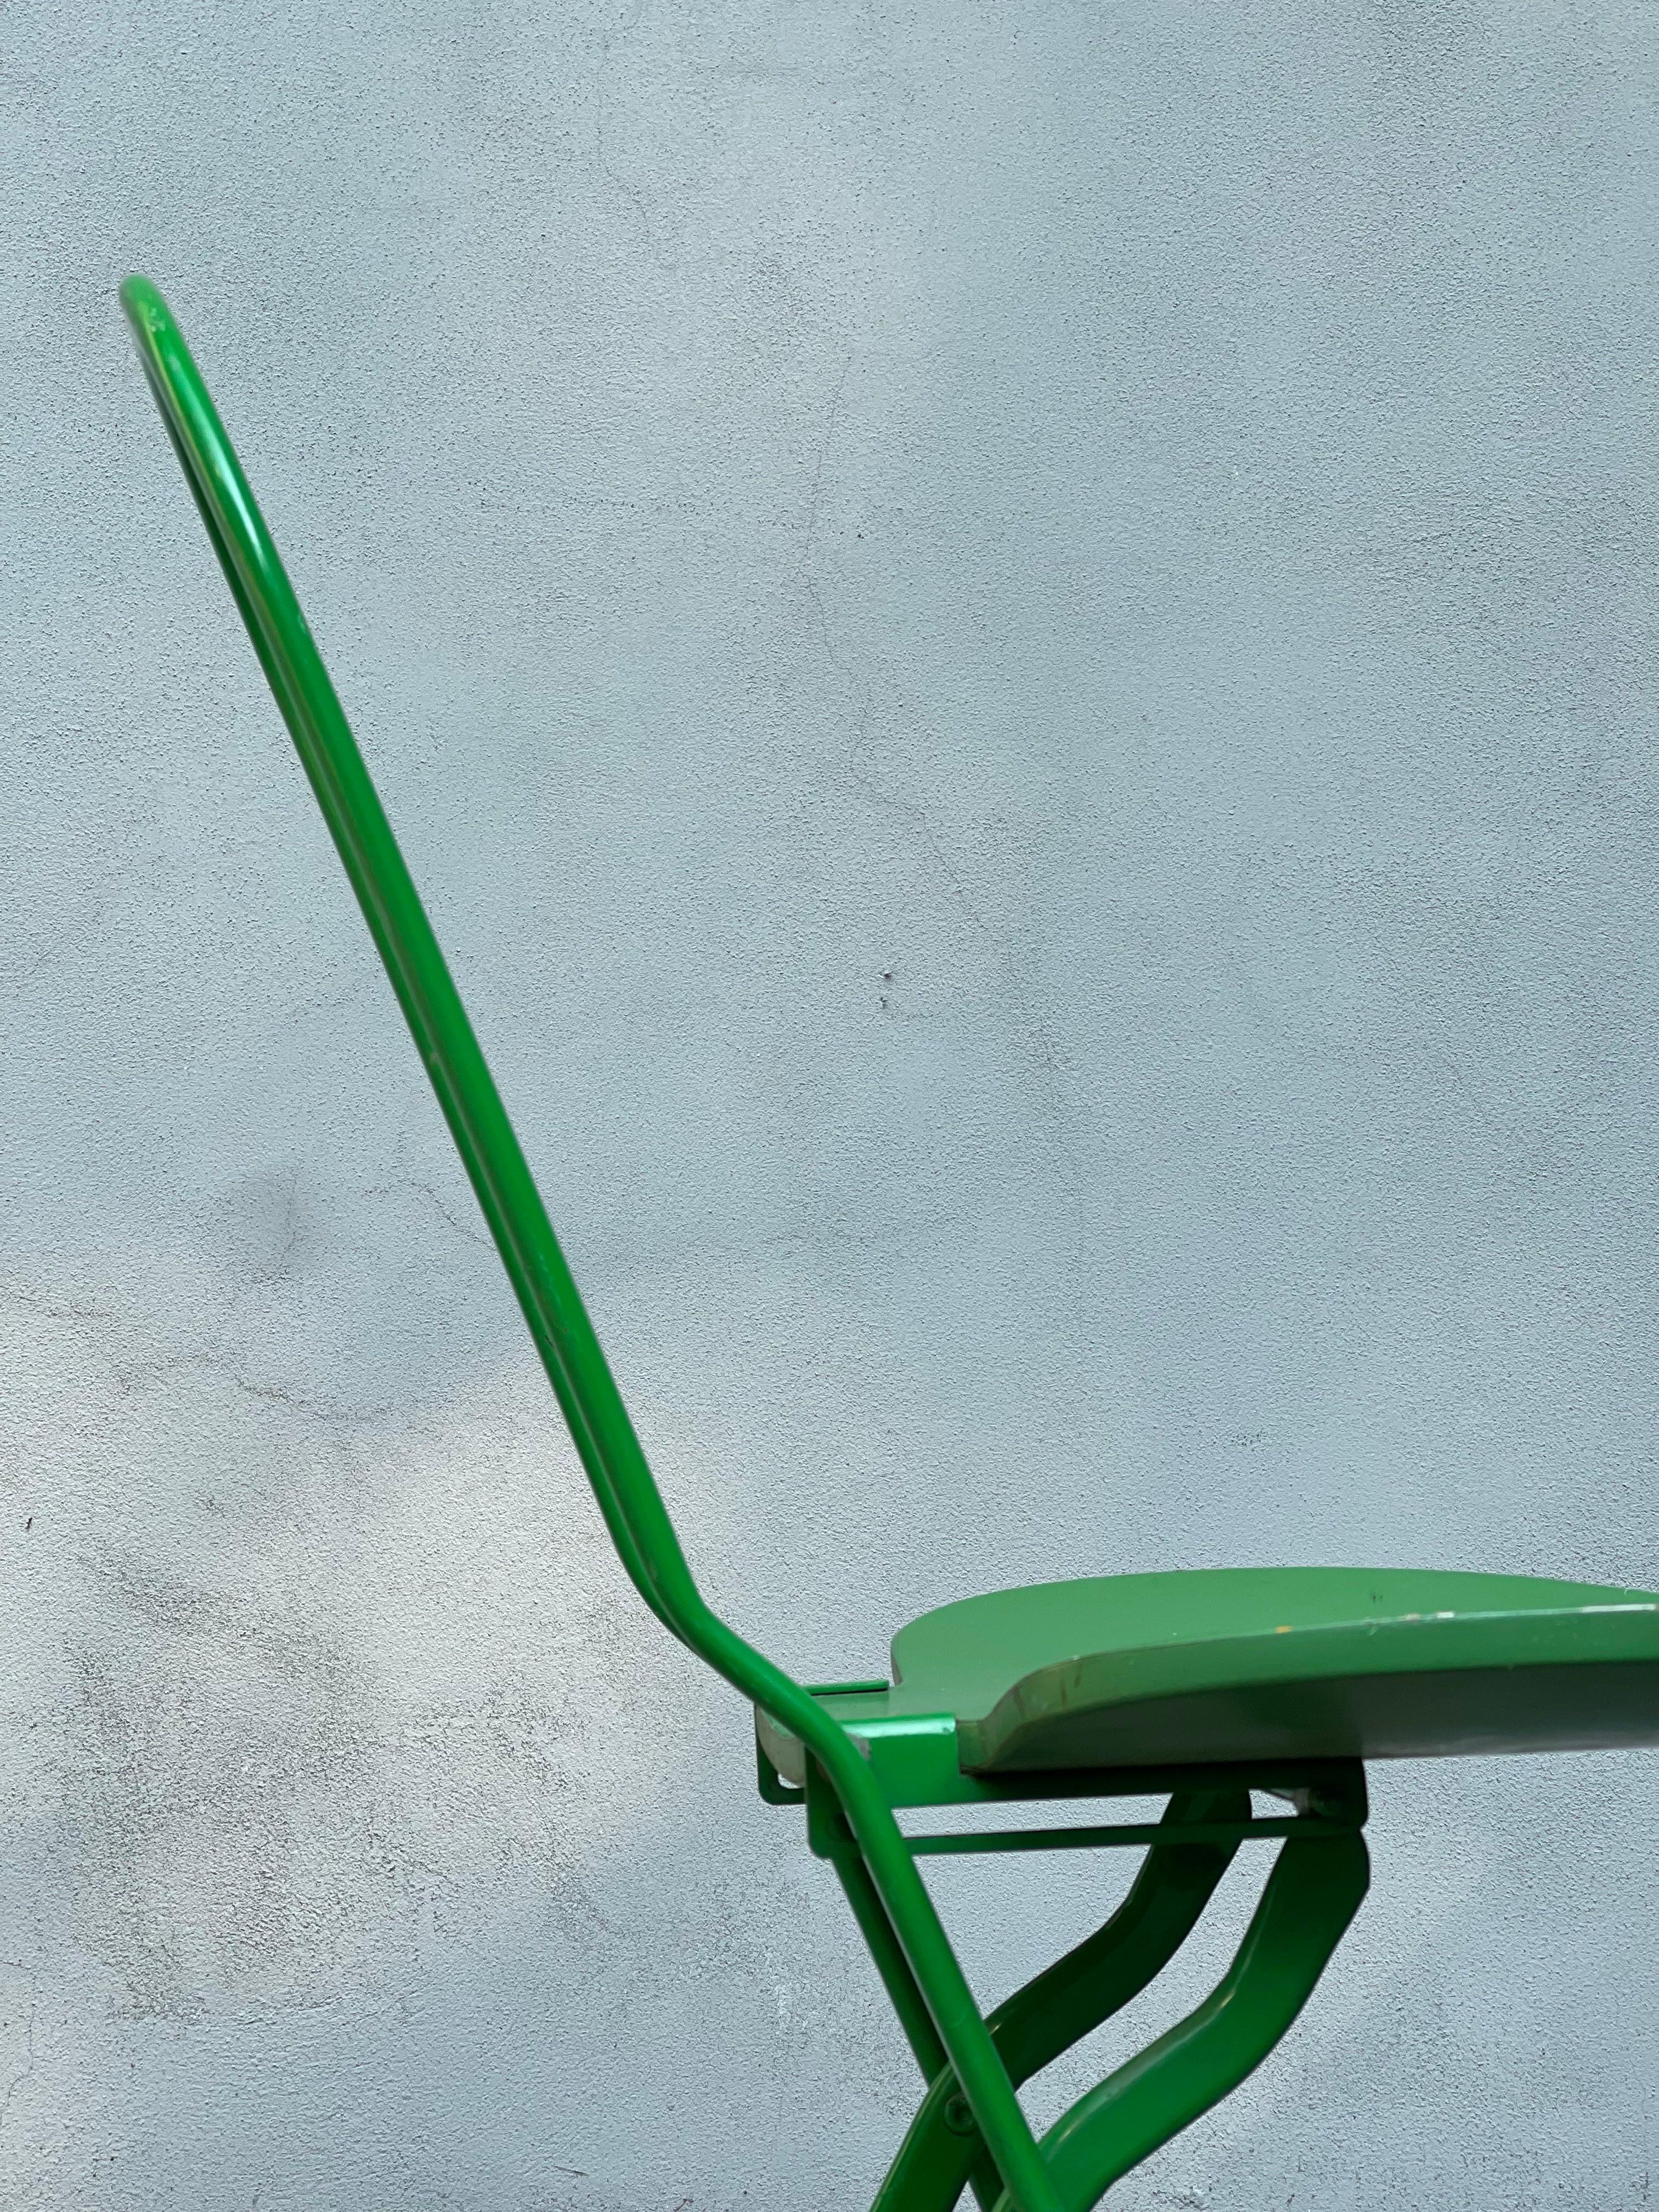 Sedia modello Dafne produzione Thema design Gastone Rinaldi anno 1979. 

Segnalazione al “Compasso d’Oro” nel 1981. Sedia pieghevole con struttura in metallo smaltato, seduta in legno laccato. 

Marchio della manifattura e firma del designer